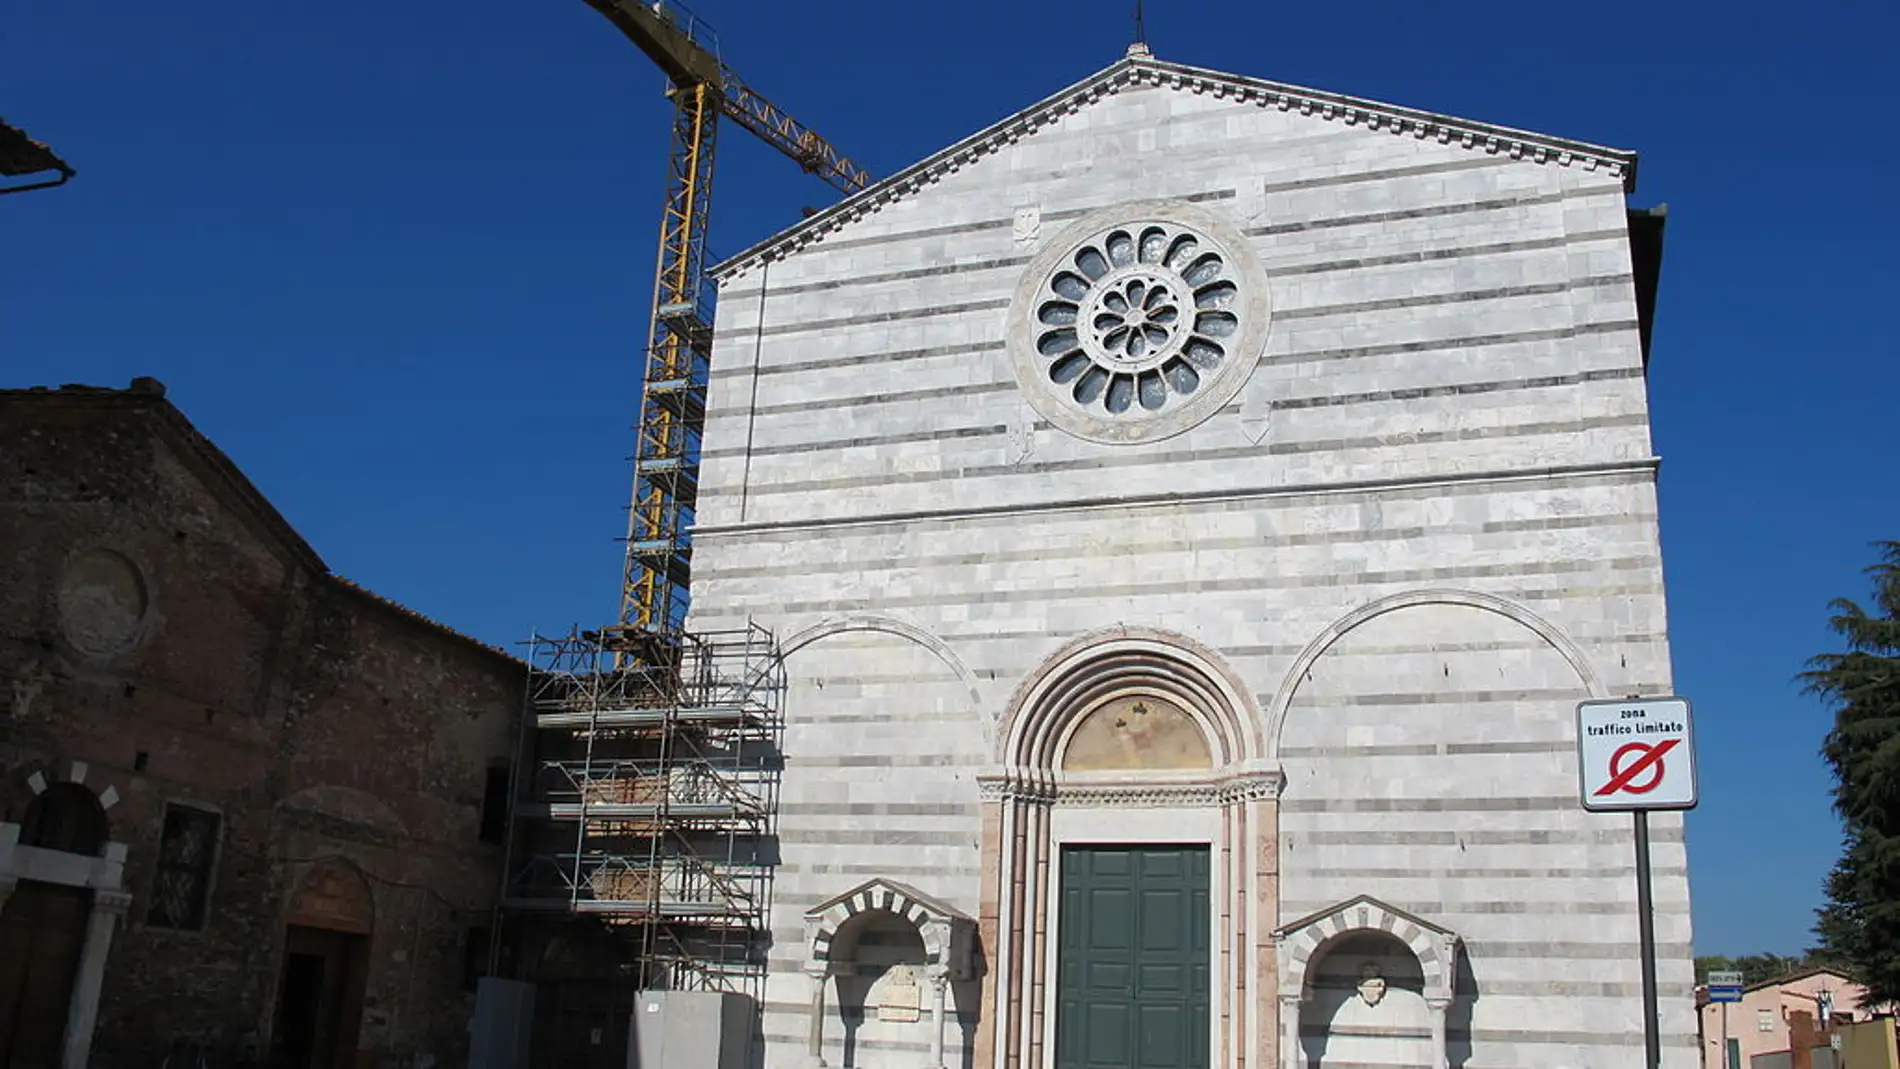 Iglesia San Francisco de Lucca: su curiosa historia y quién se encuentra enterrado allí